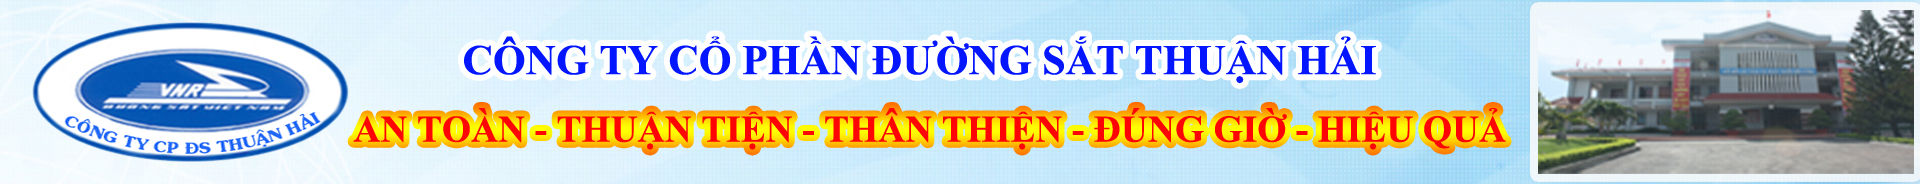 Công ty Cổ phần Đường sắt Thuận Hải